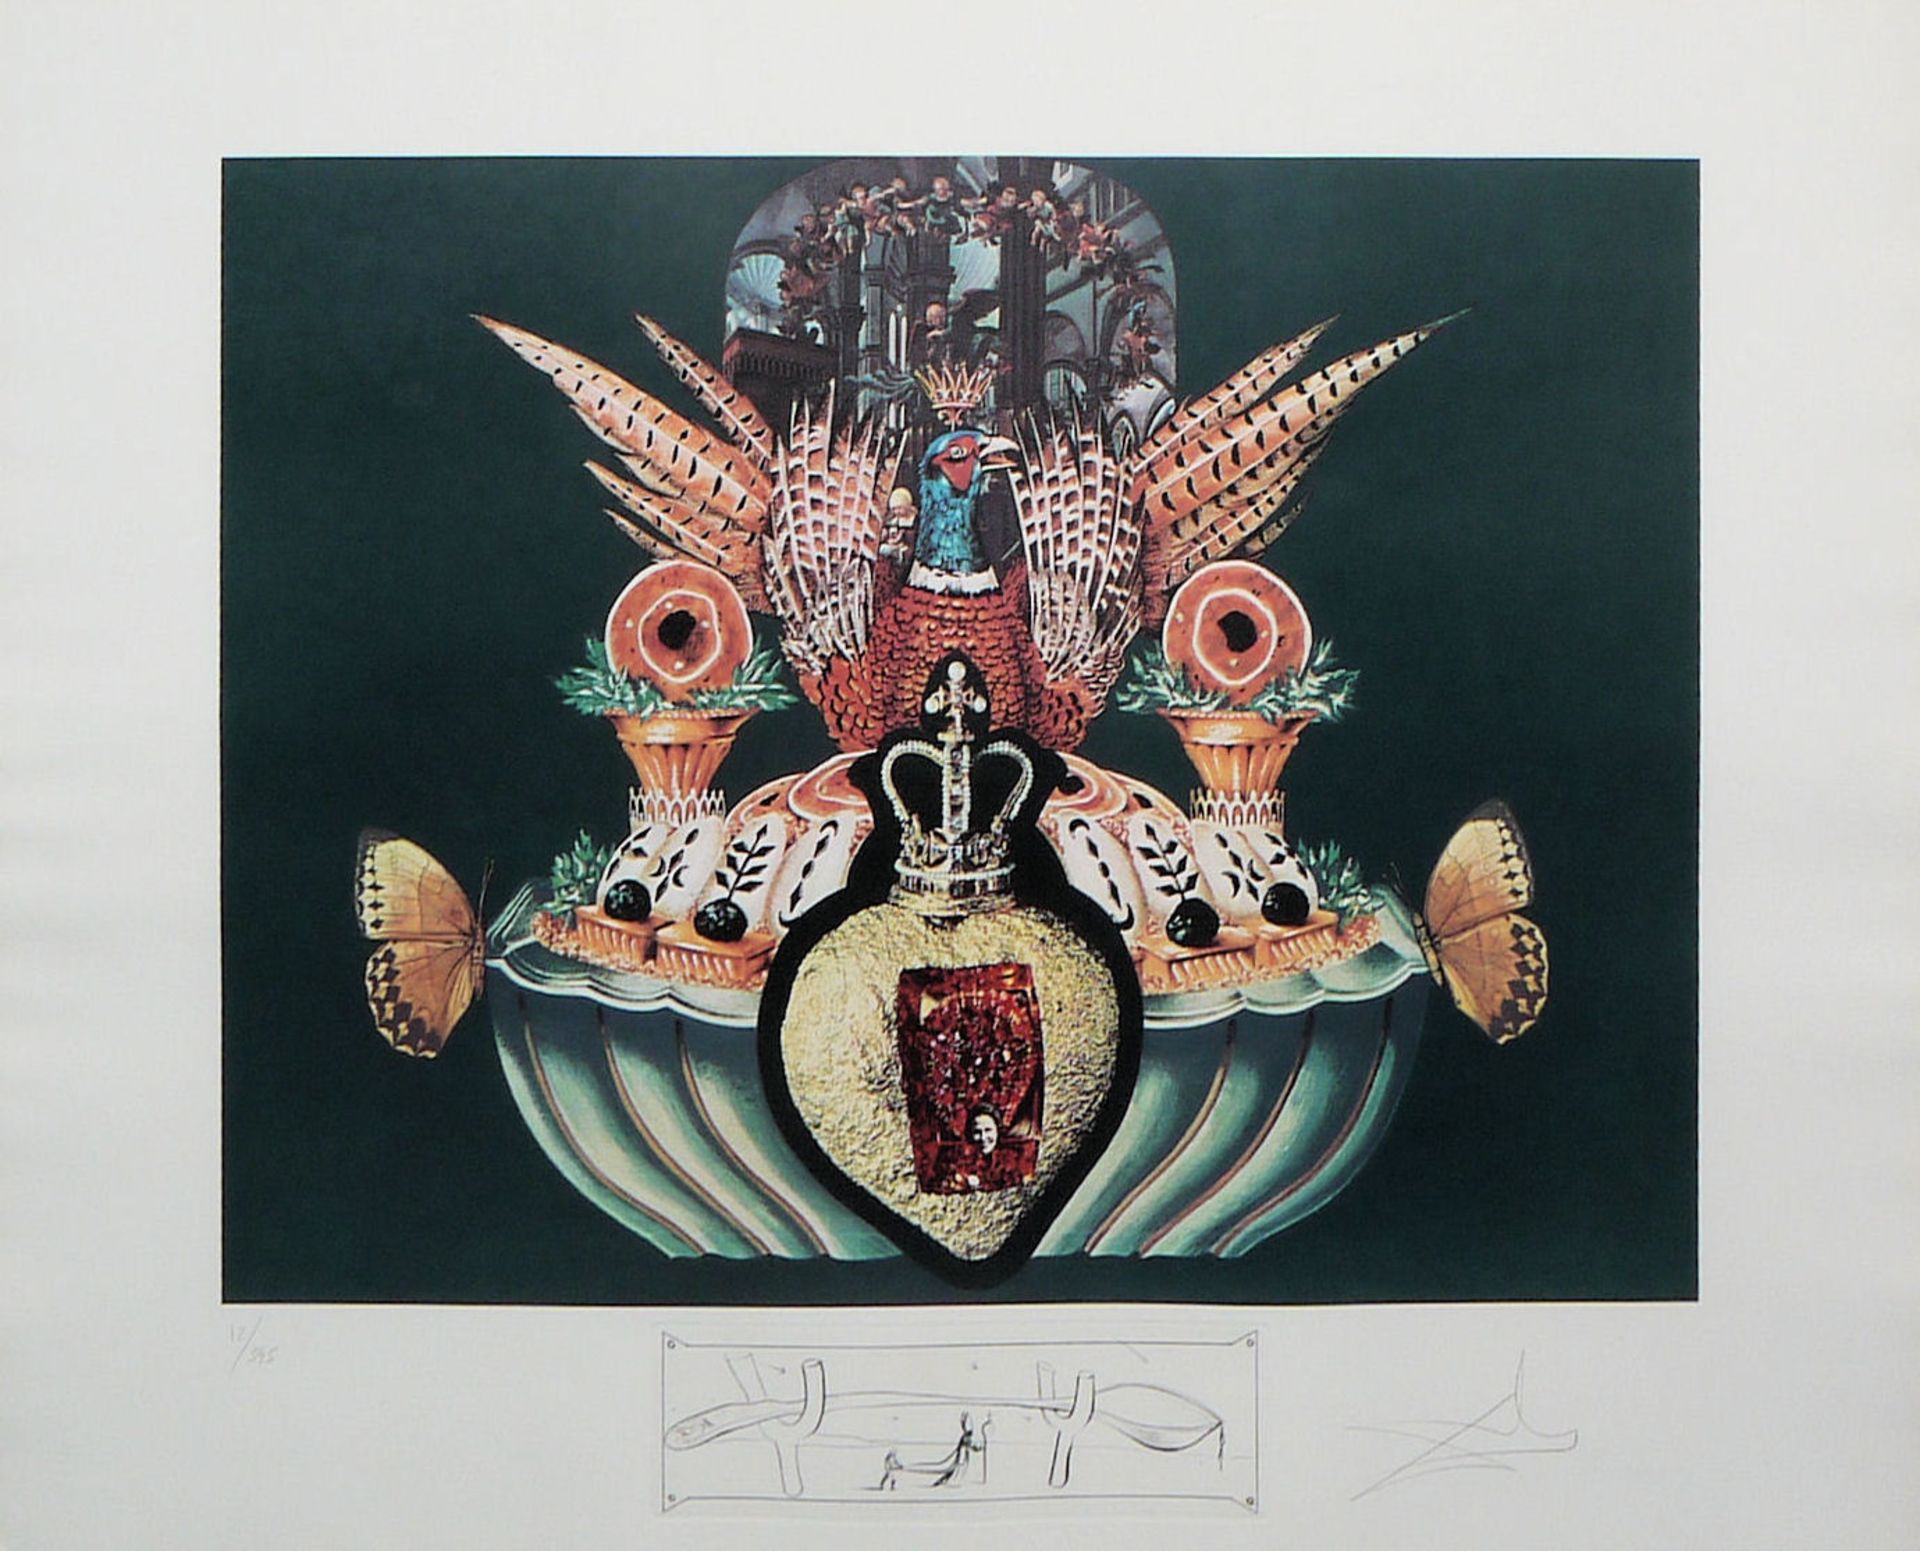 Salvador Dalí, "Les Chairs monarchiques", aus: "Les Dîners de Gala", Lithographien von 1971, signie